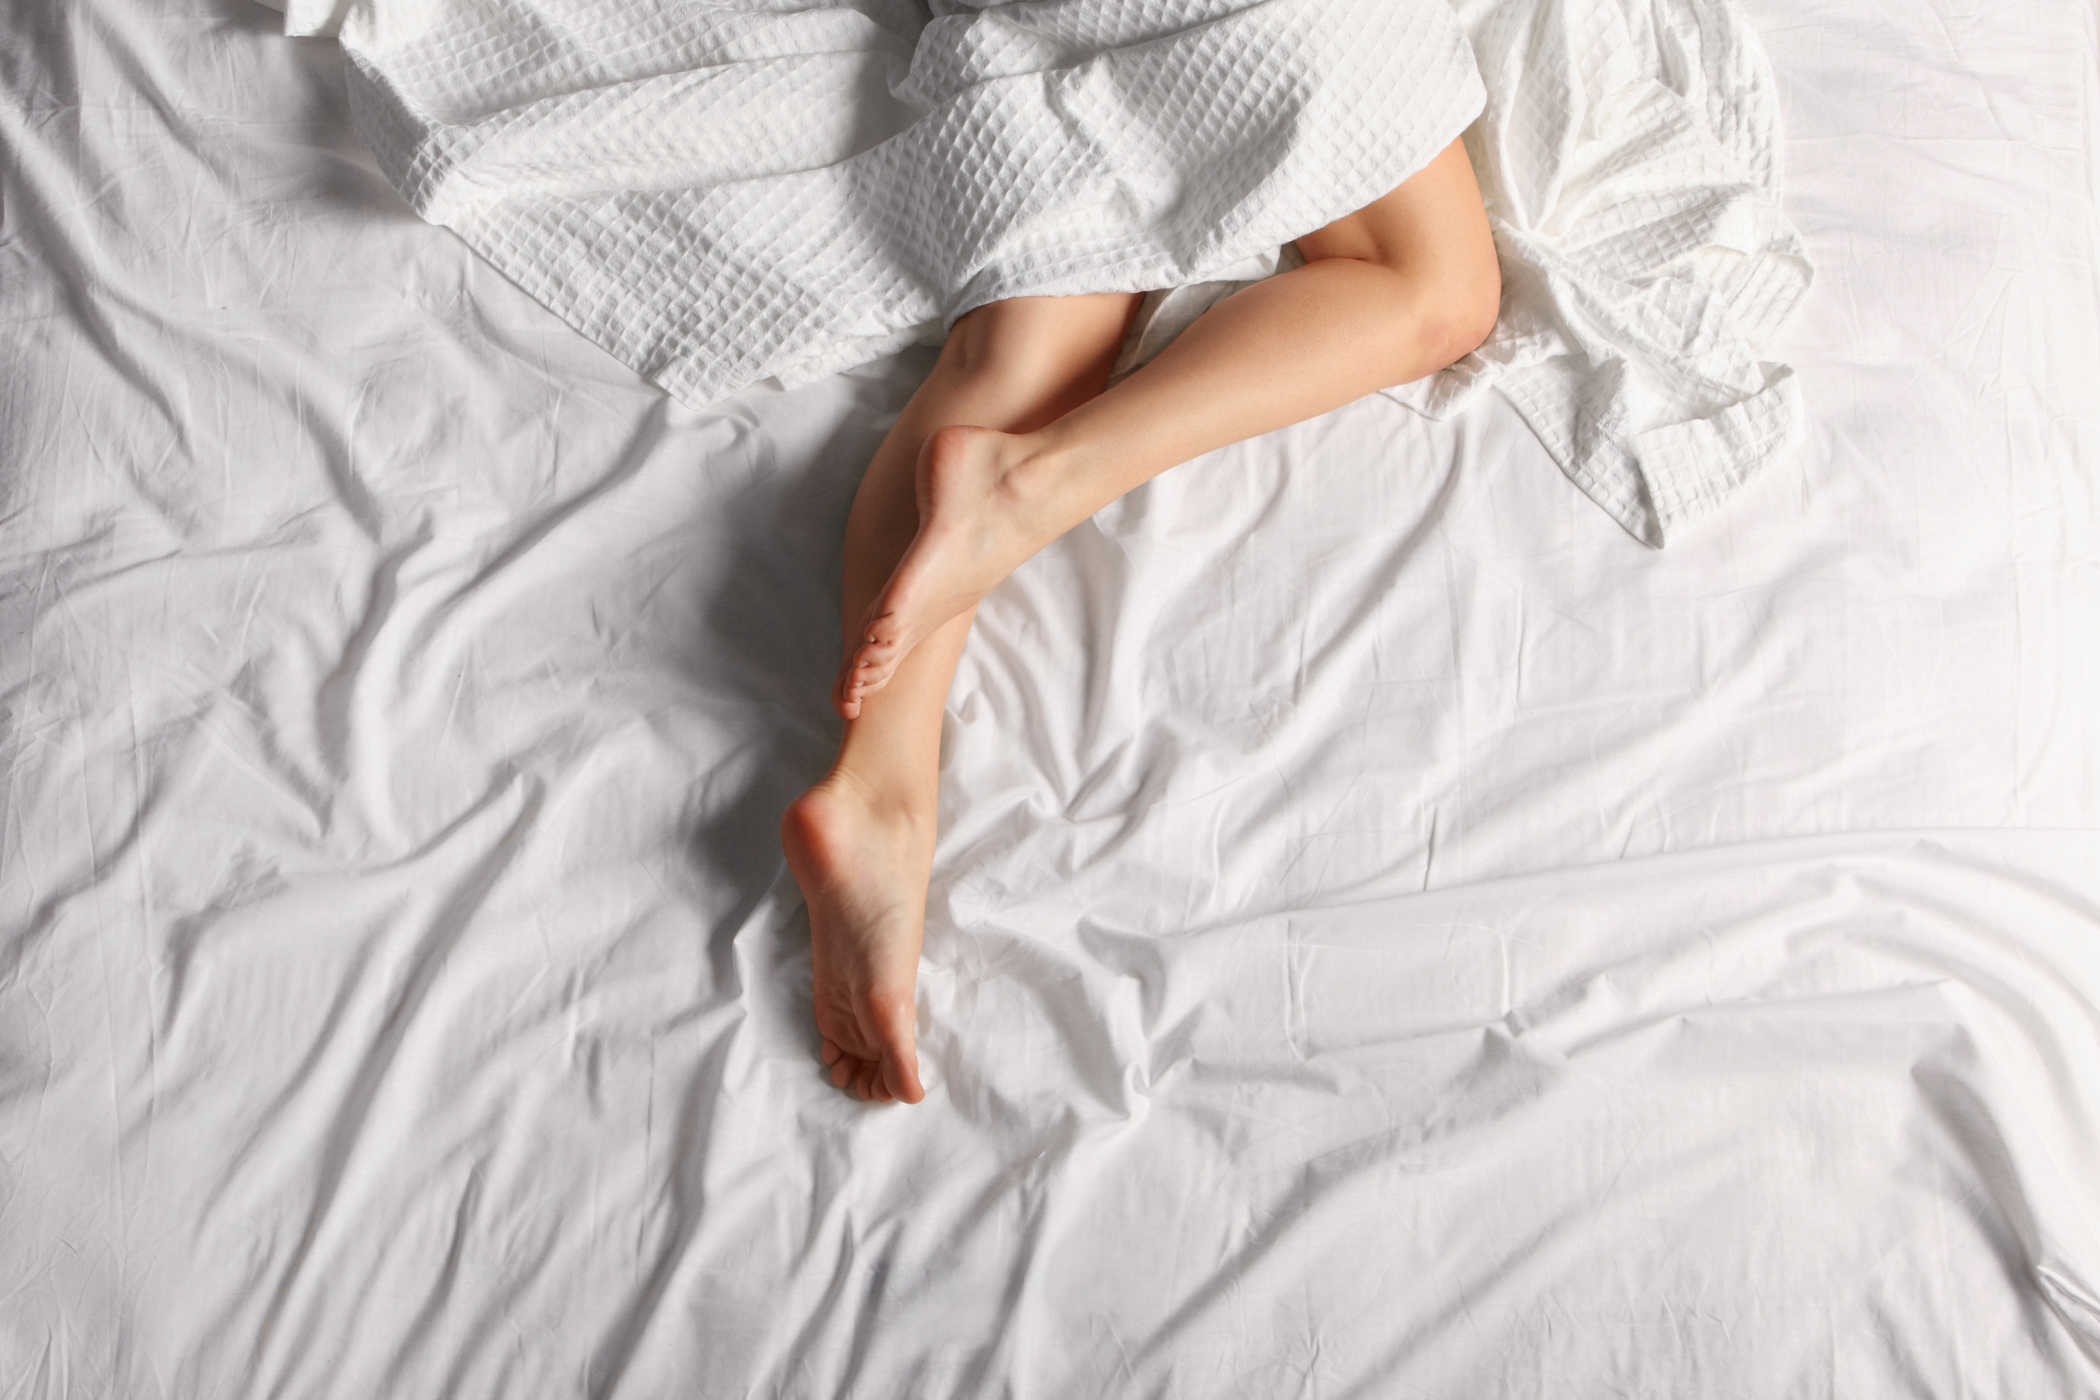 5 فوائد للنوم بدون ملابس داخلية للصحة